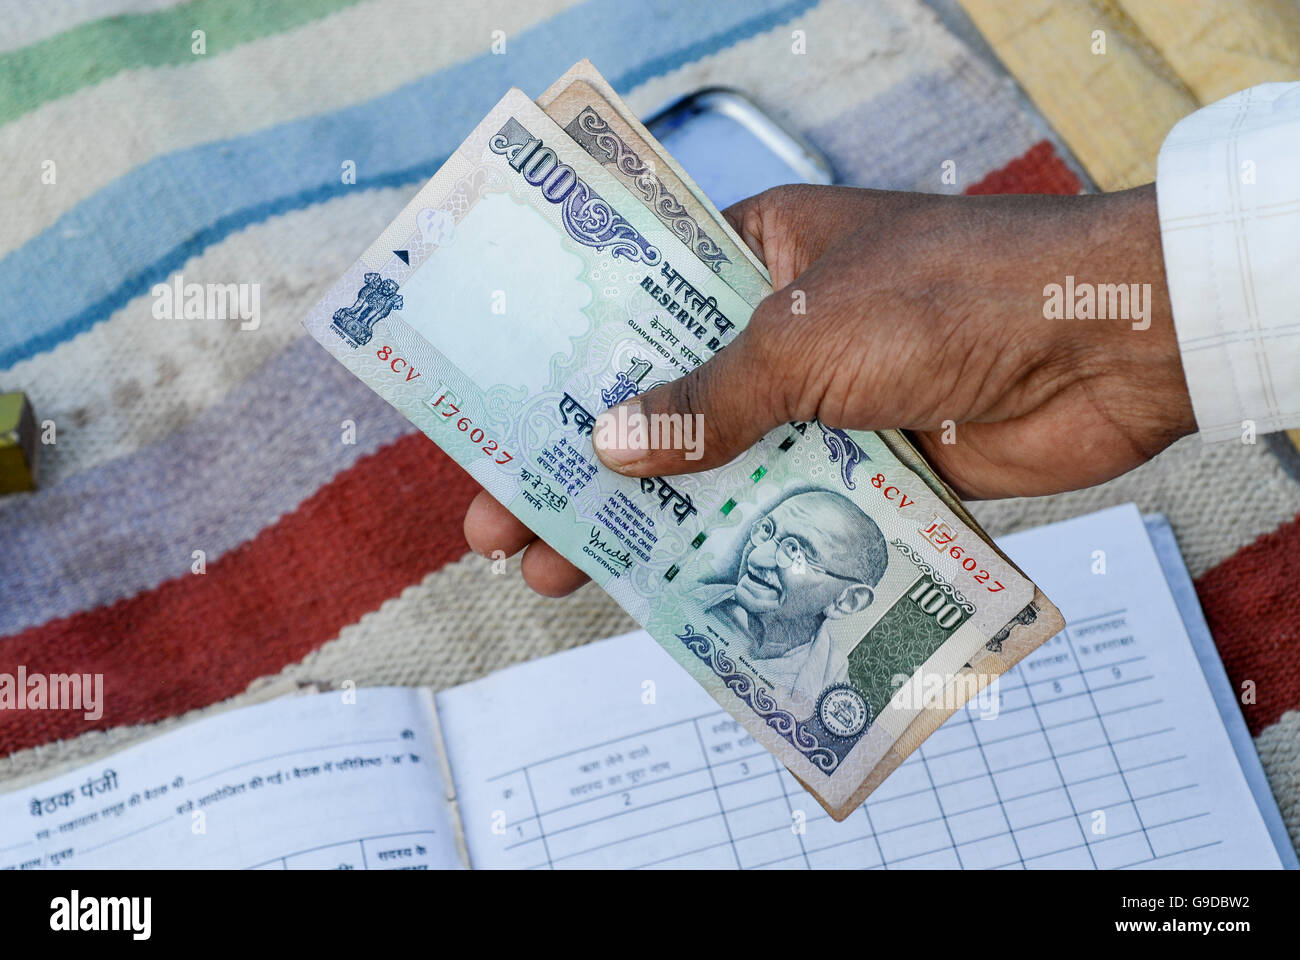 Indien, Madhya Pradesh, Landfrauen Bank im Dorf, hundert Rupien-Banknote mit Bild von Mahatma Gandhi Stockfoto